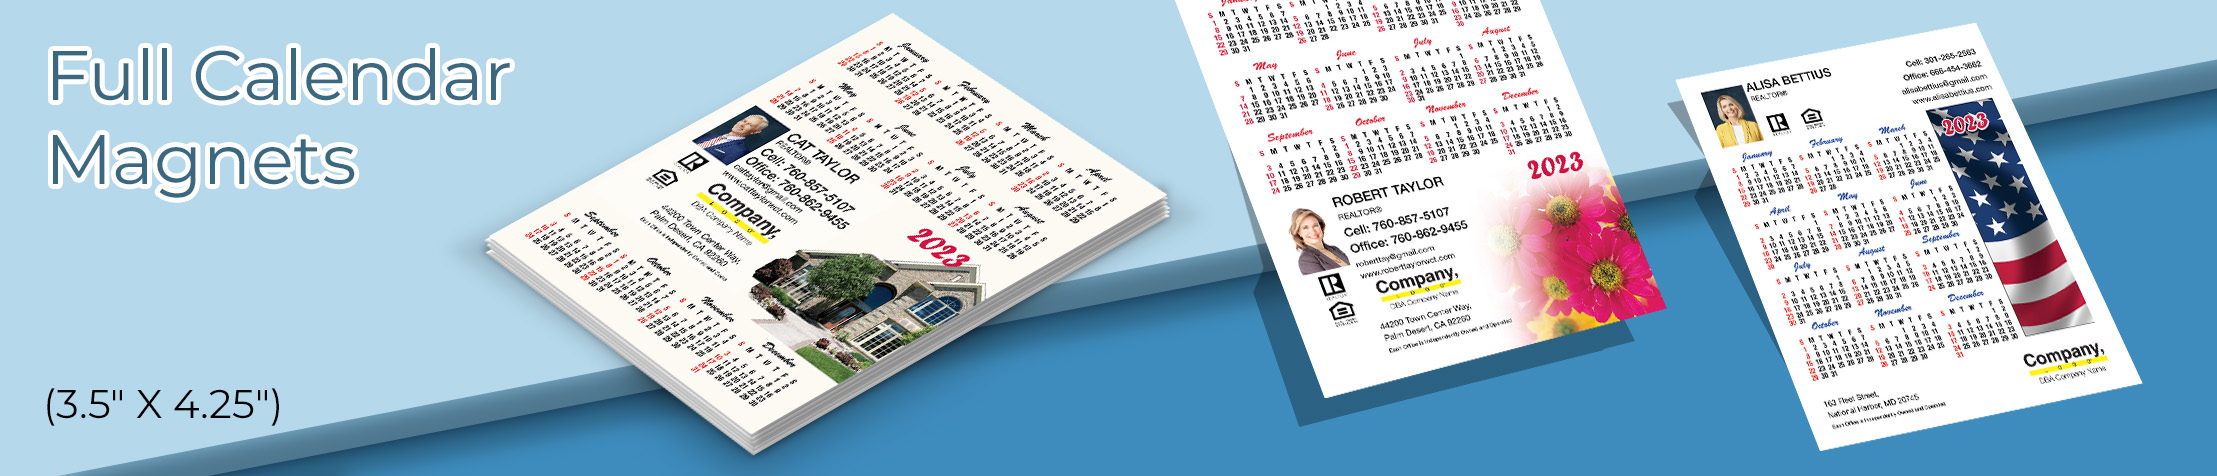 Weichert Real Estate Full Calendar Magnets - Weichert 2019 calendars, 3.5” by 4.25” | BestPrintBuy.com